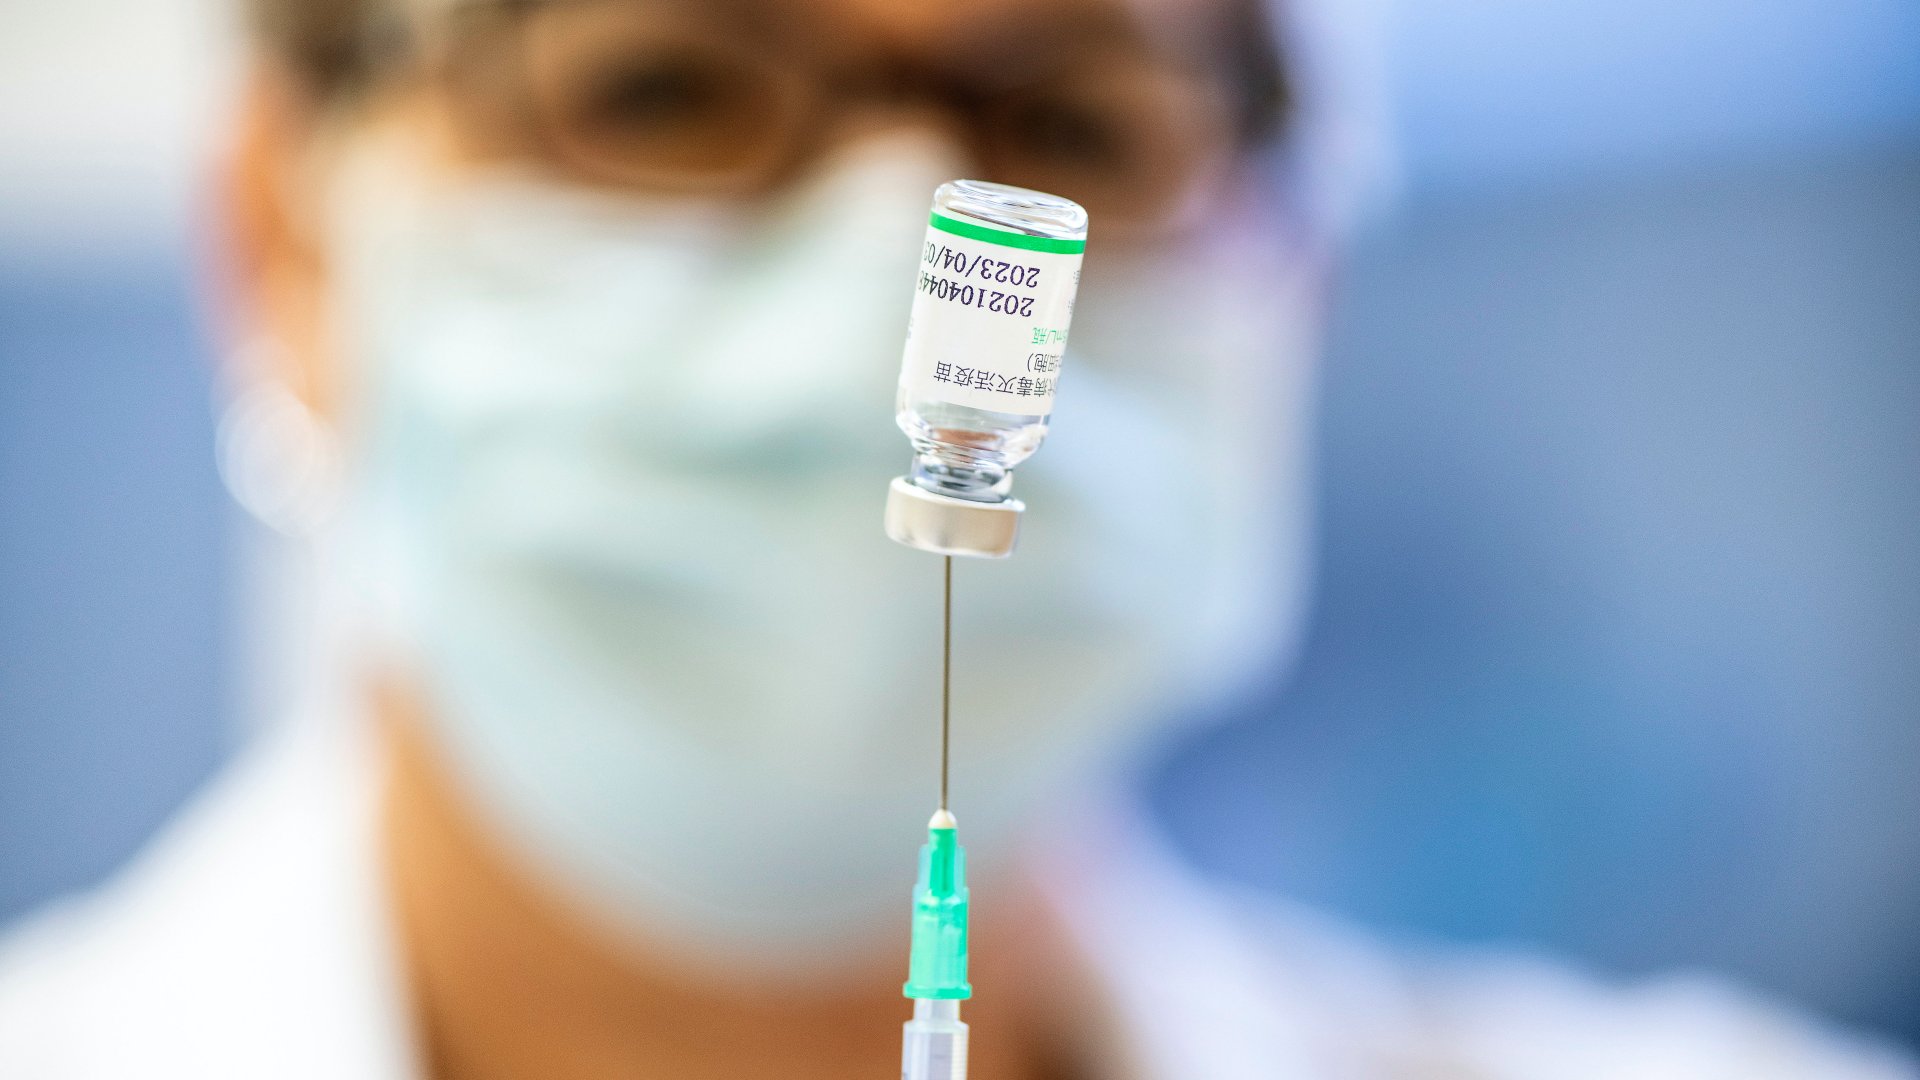 Az asszisztens elõkészíti a kínai Sinopharm koronavírus elleni vakcinát a nyíregyházi Jósa András Oktatókórházban kialakított oltóponton 2022. február 26-án.